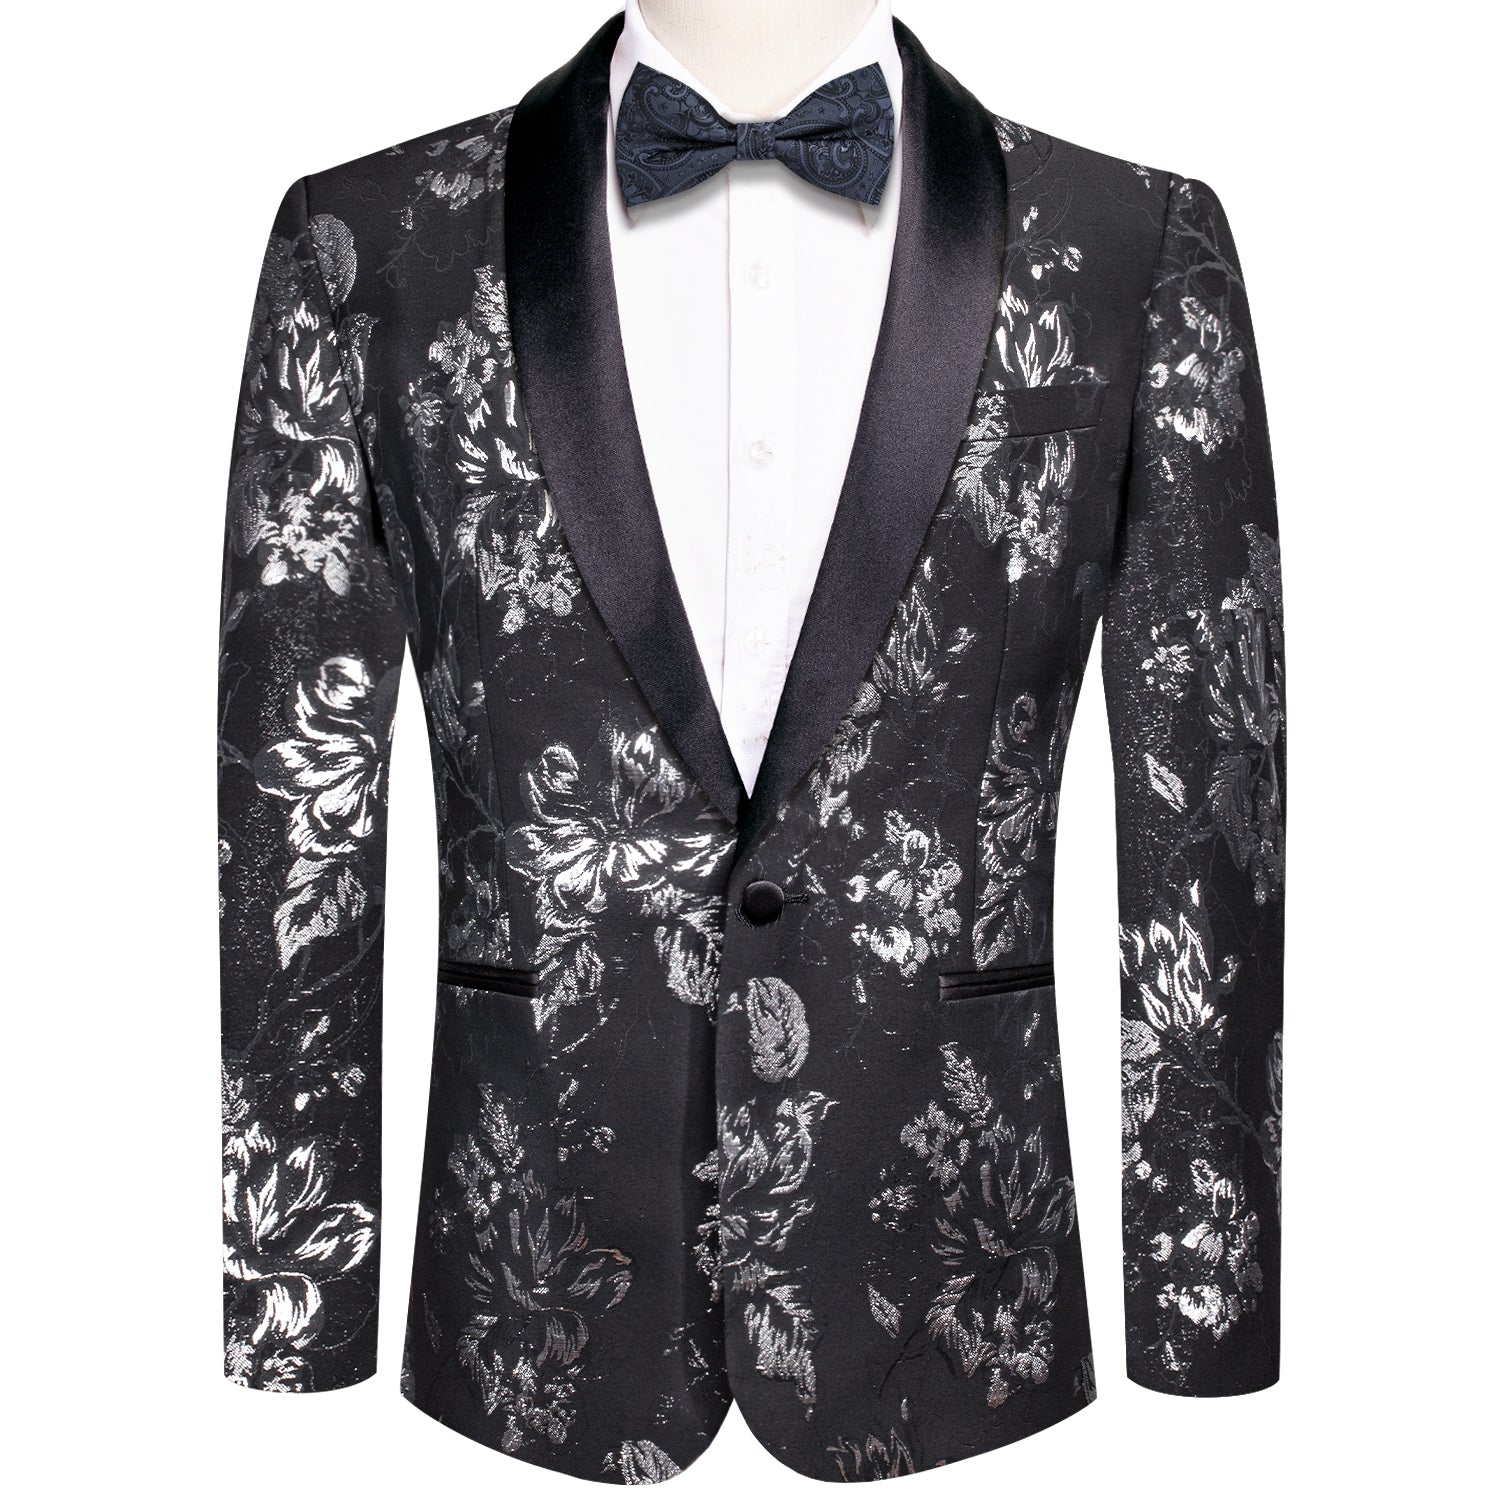 Hi-Tie Luxury Black White Floral Men's Suit Set